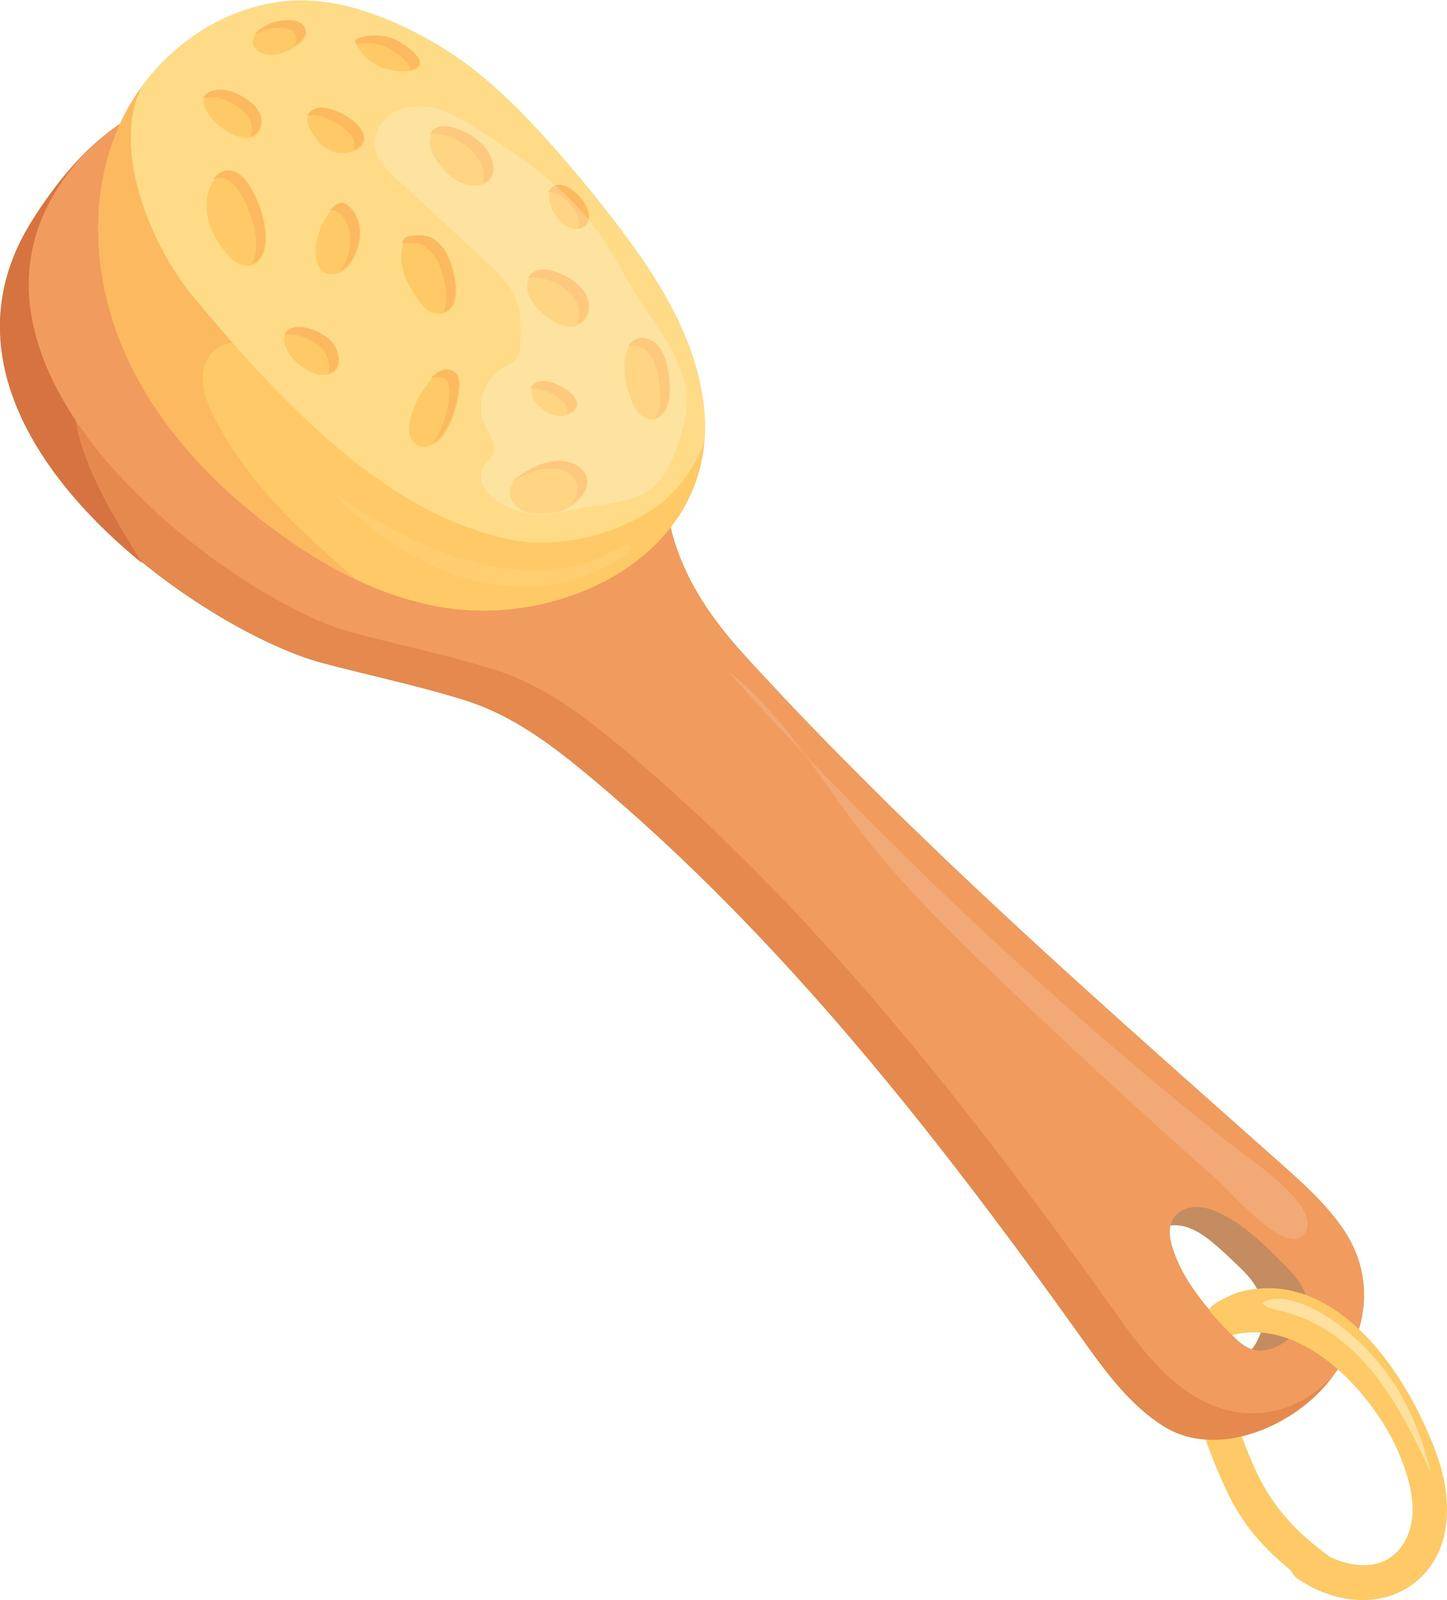 Sea sponge on wooden handle. Cartoon bath accessory by Stock-Smart-Start